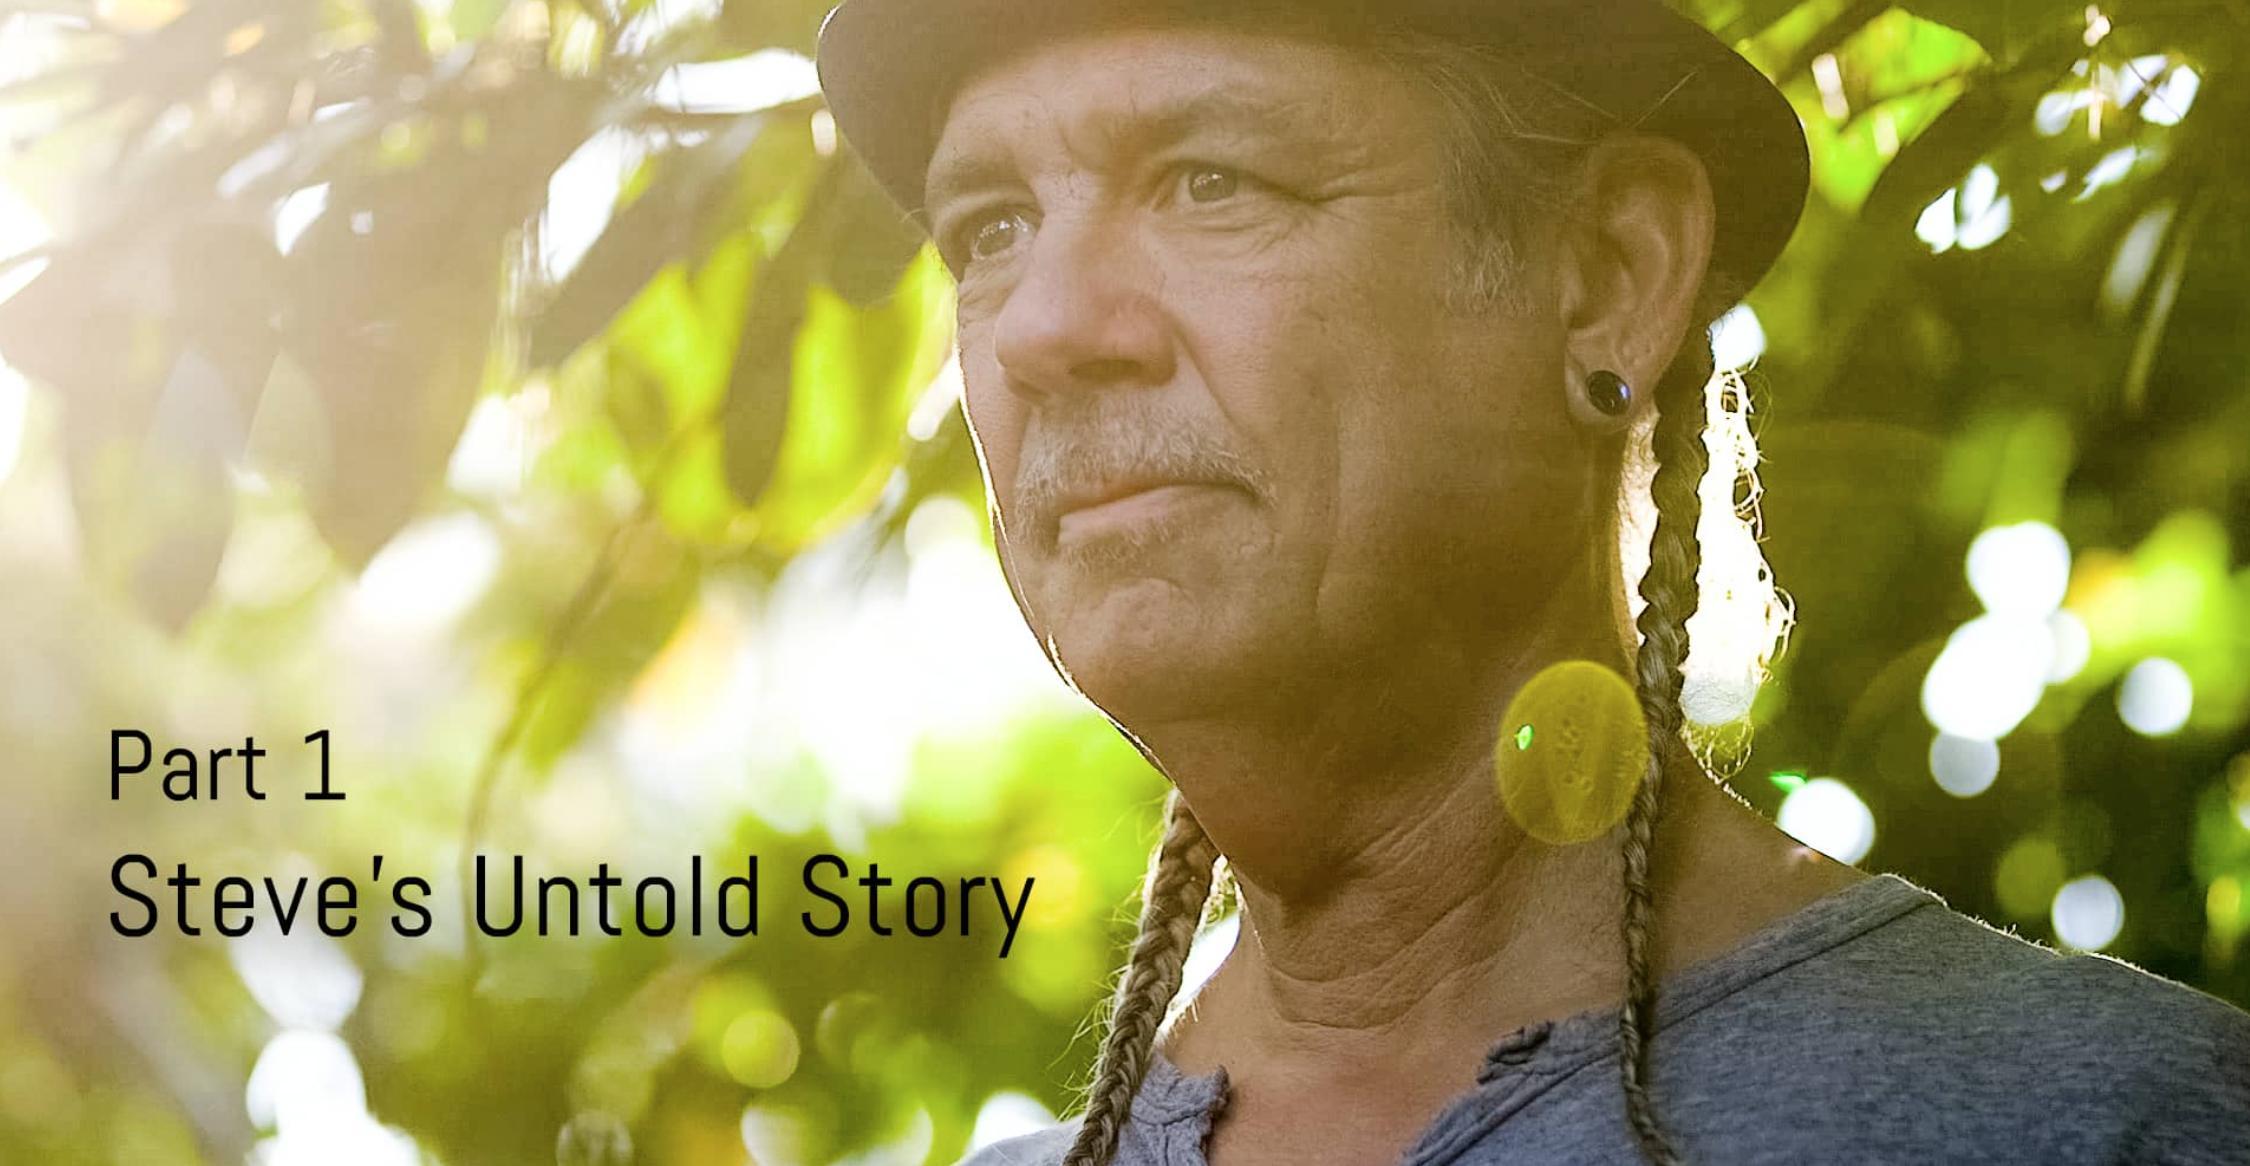 WATCH: Legendary Marijuana Activist, Steve DeAngelo's Untold Story